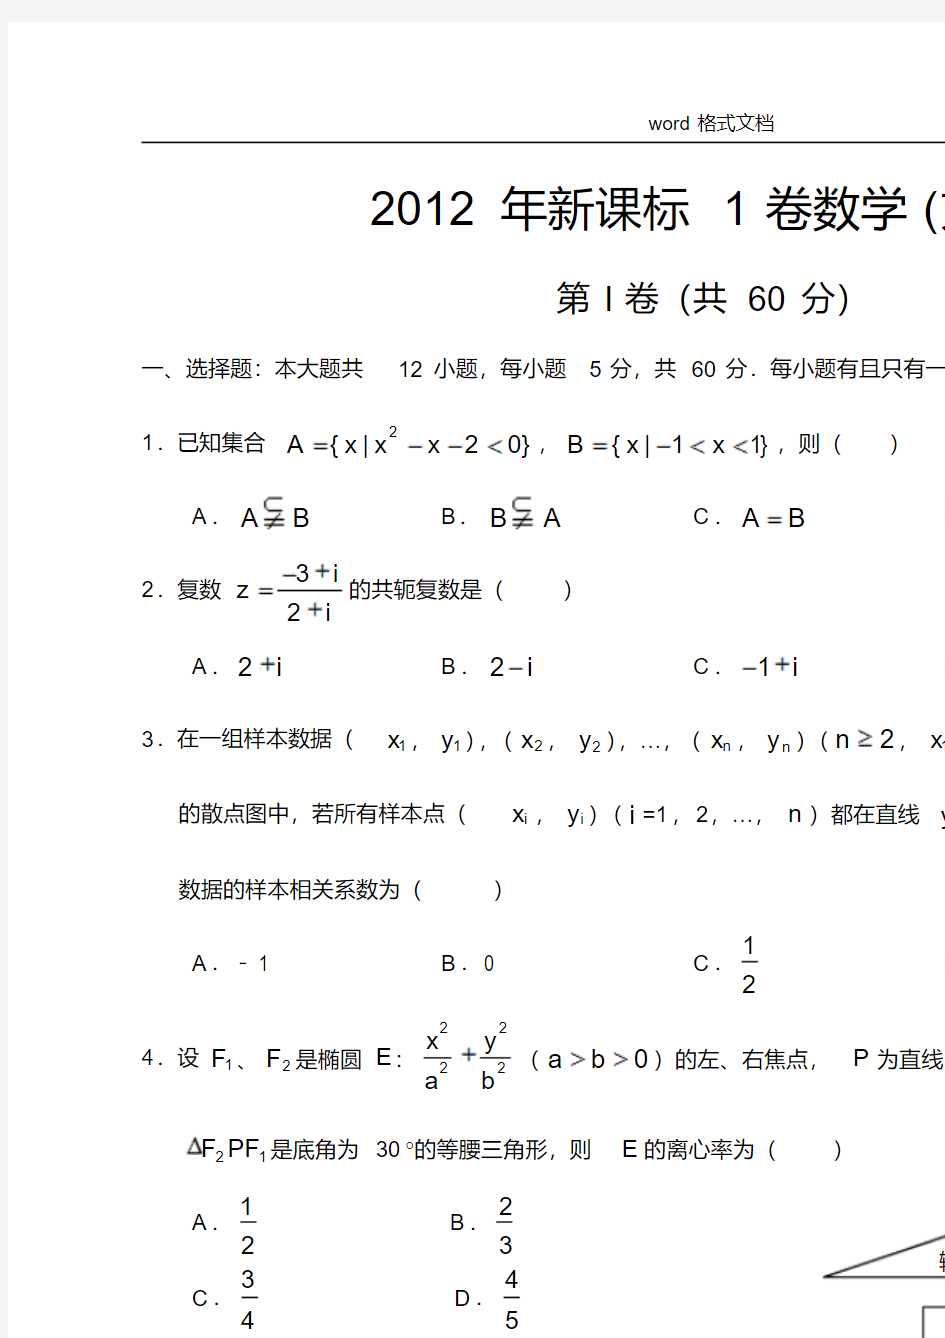 2012年全国高考新课标1卷数学文科高考试题